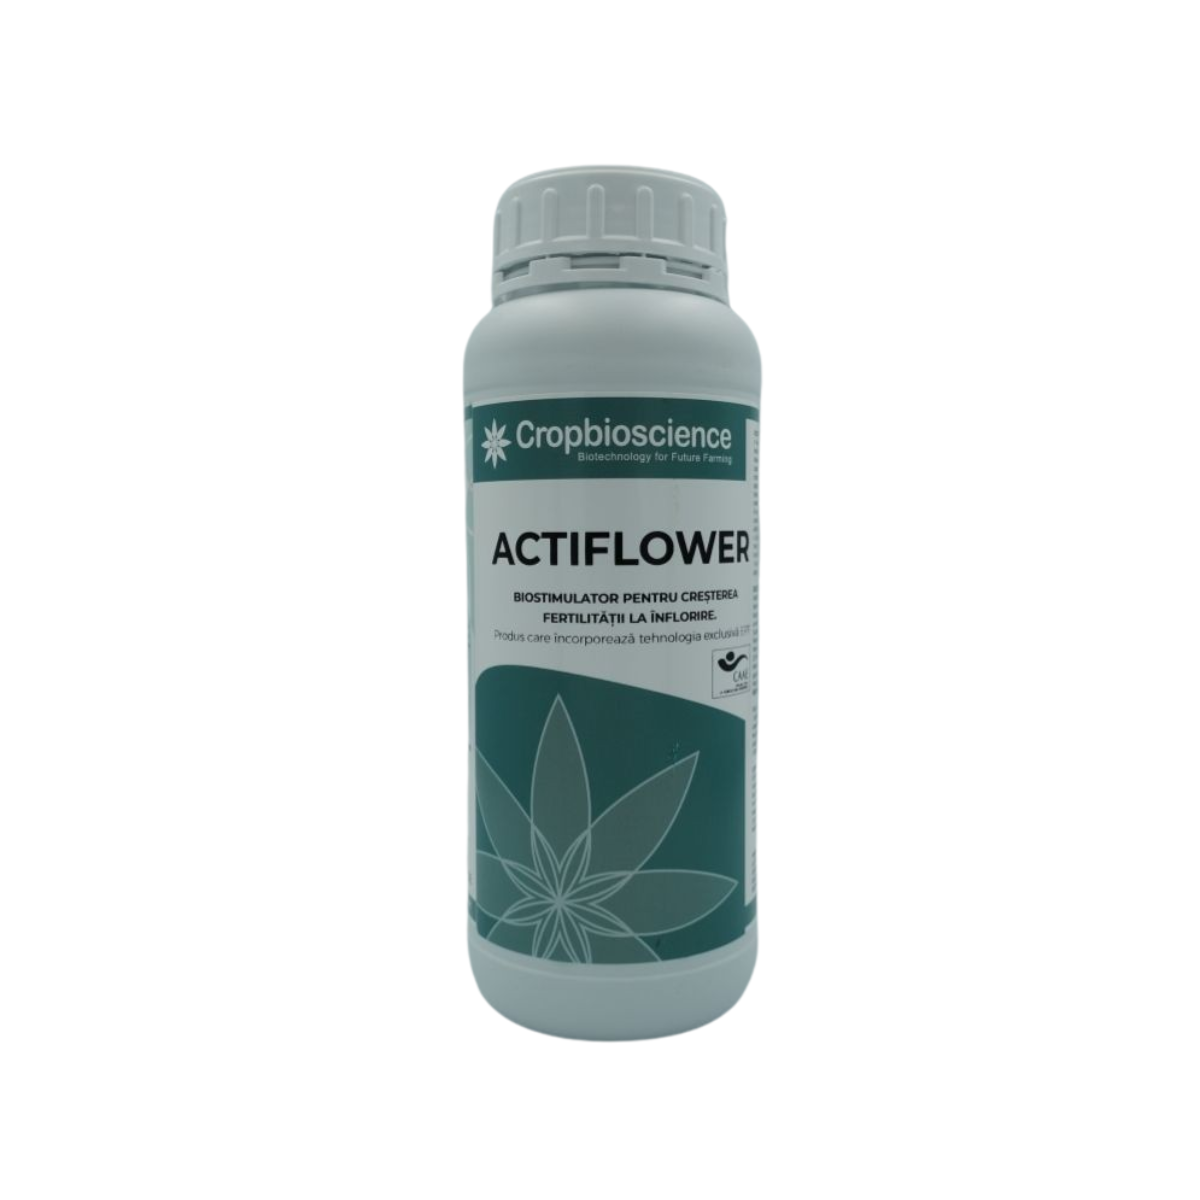 Biostimulatori eco - Biostimulator ecologic cu polifenoli pentru inflorire si fructificare Actiflower, 0.5 L, hectarul.ro